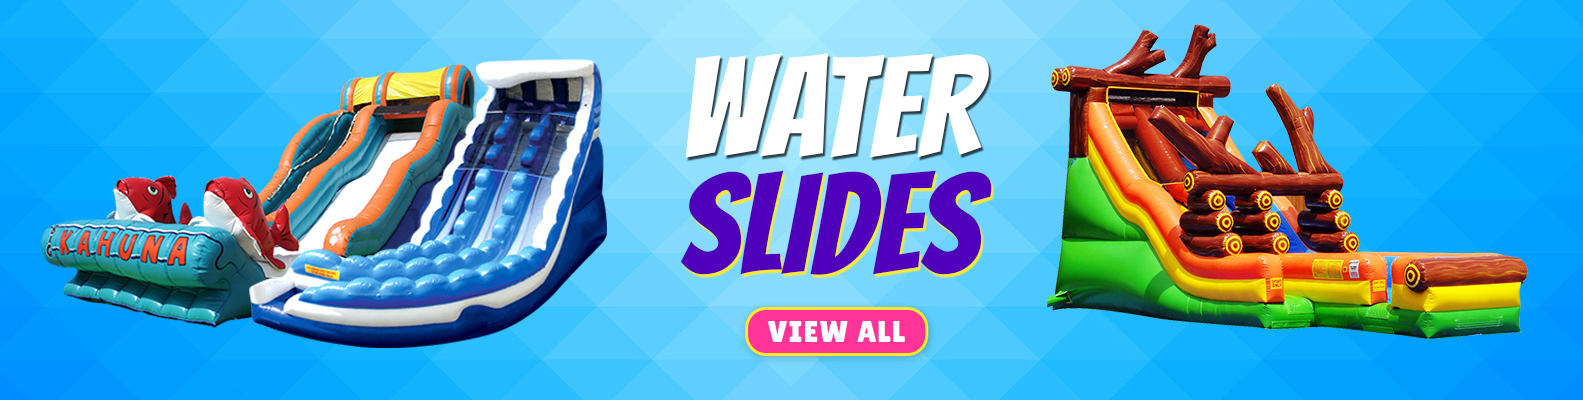 inflatable water slide rentals in Phoenix